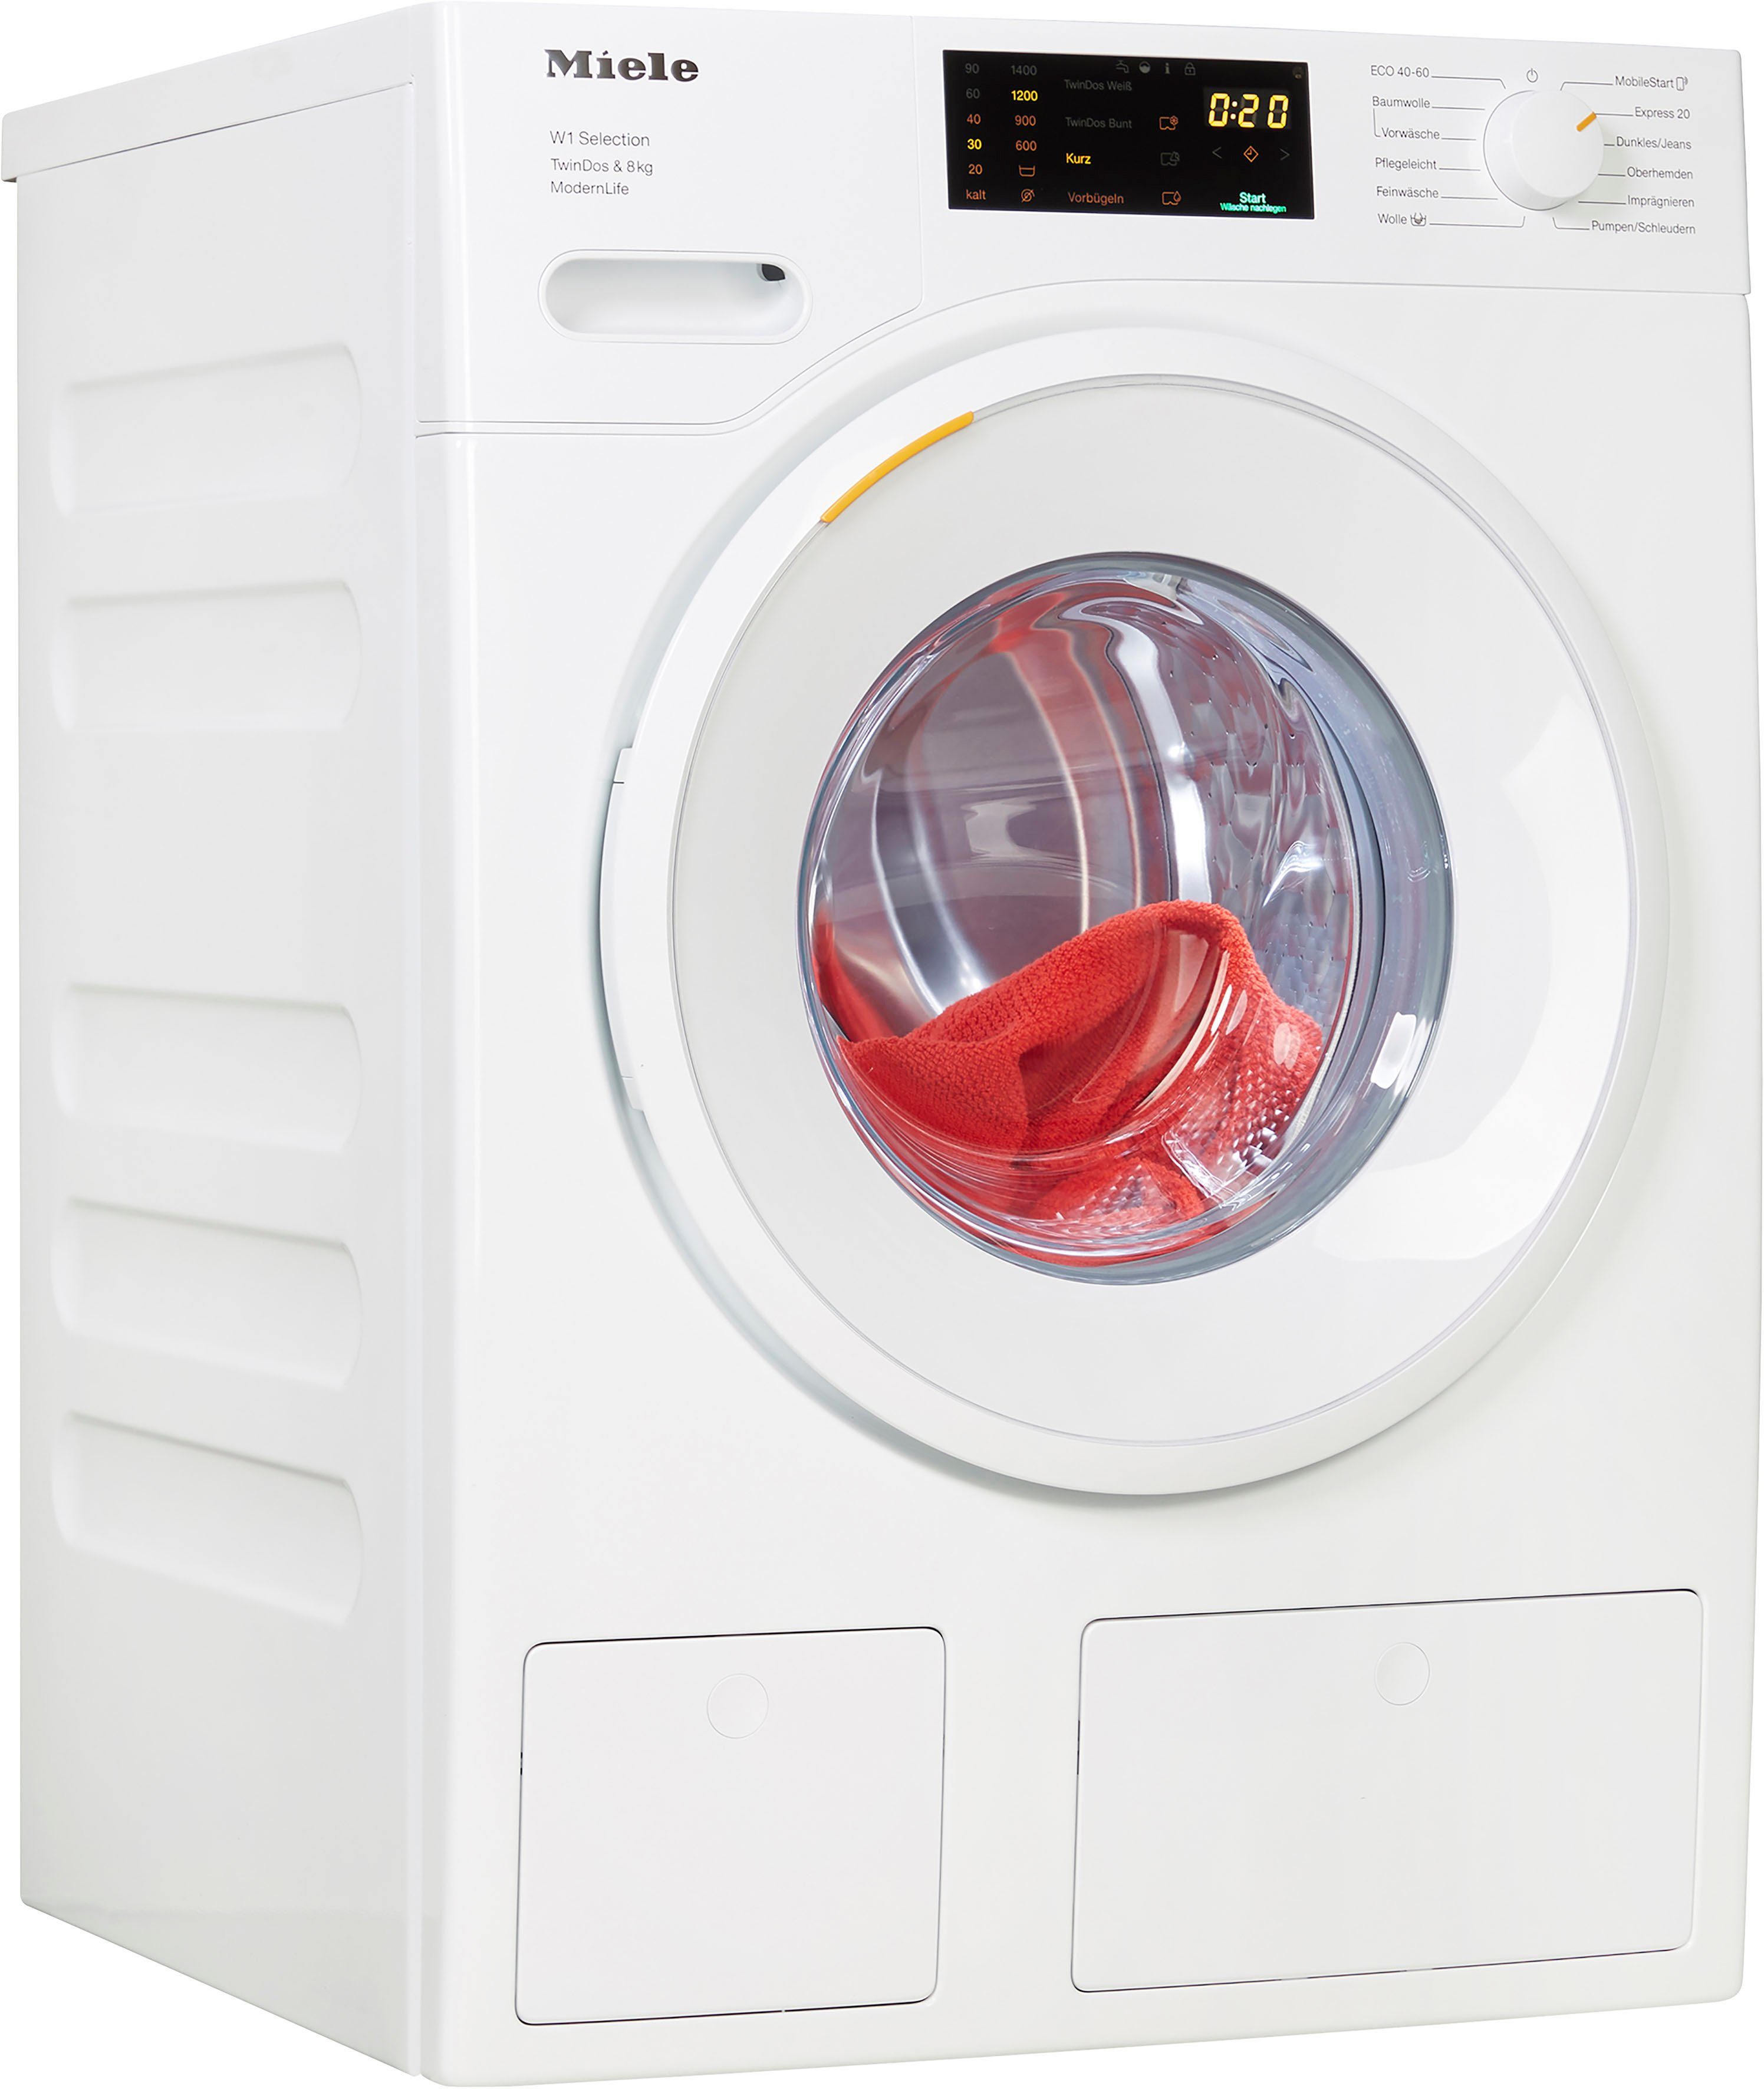 TwinDos TDos&8kg, U/min, WCS kg, automatischen WSD663 Waschmitteldosierung ModernLife zur Miele 8 Waschmaschine 1400